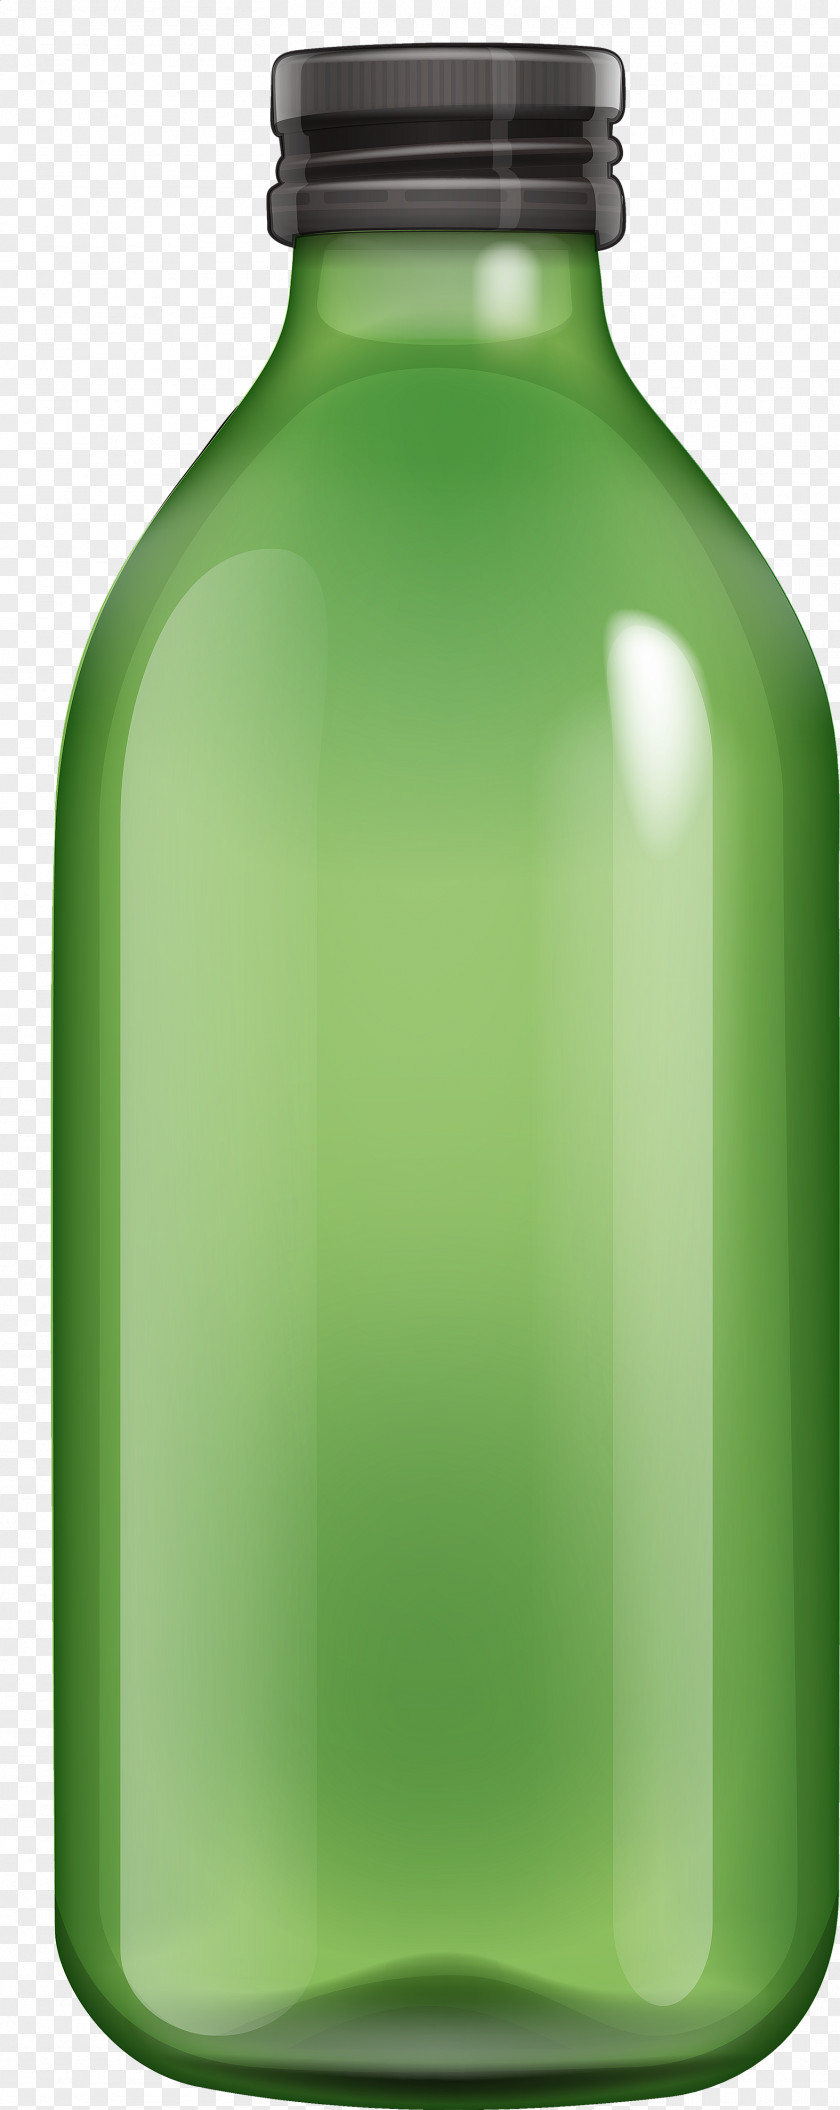 Gold Bottle Transparent Clip Art Water Bottles Transparency PNG